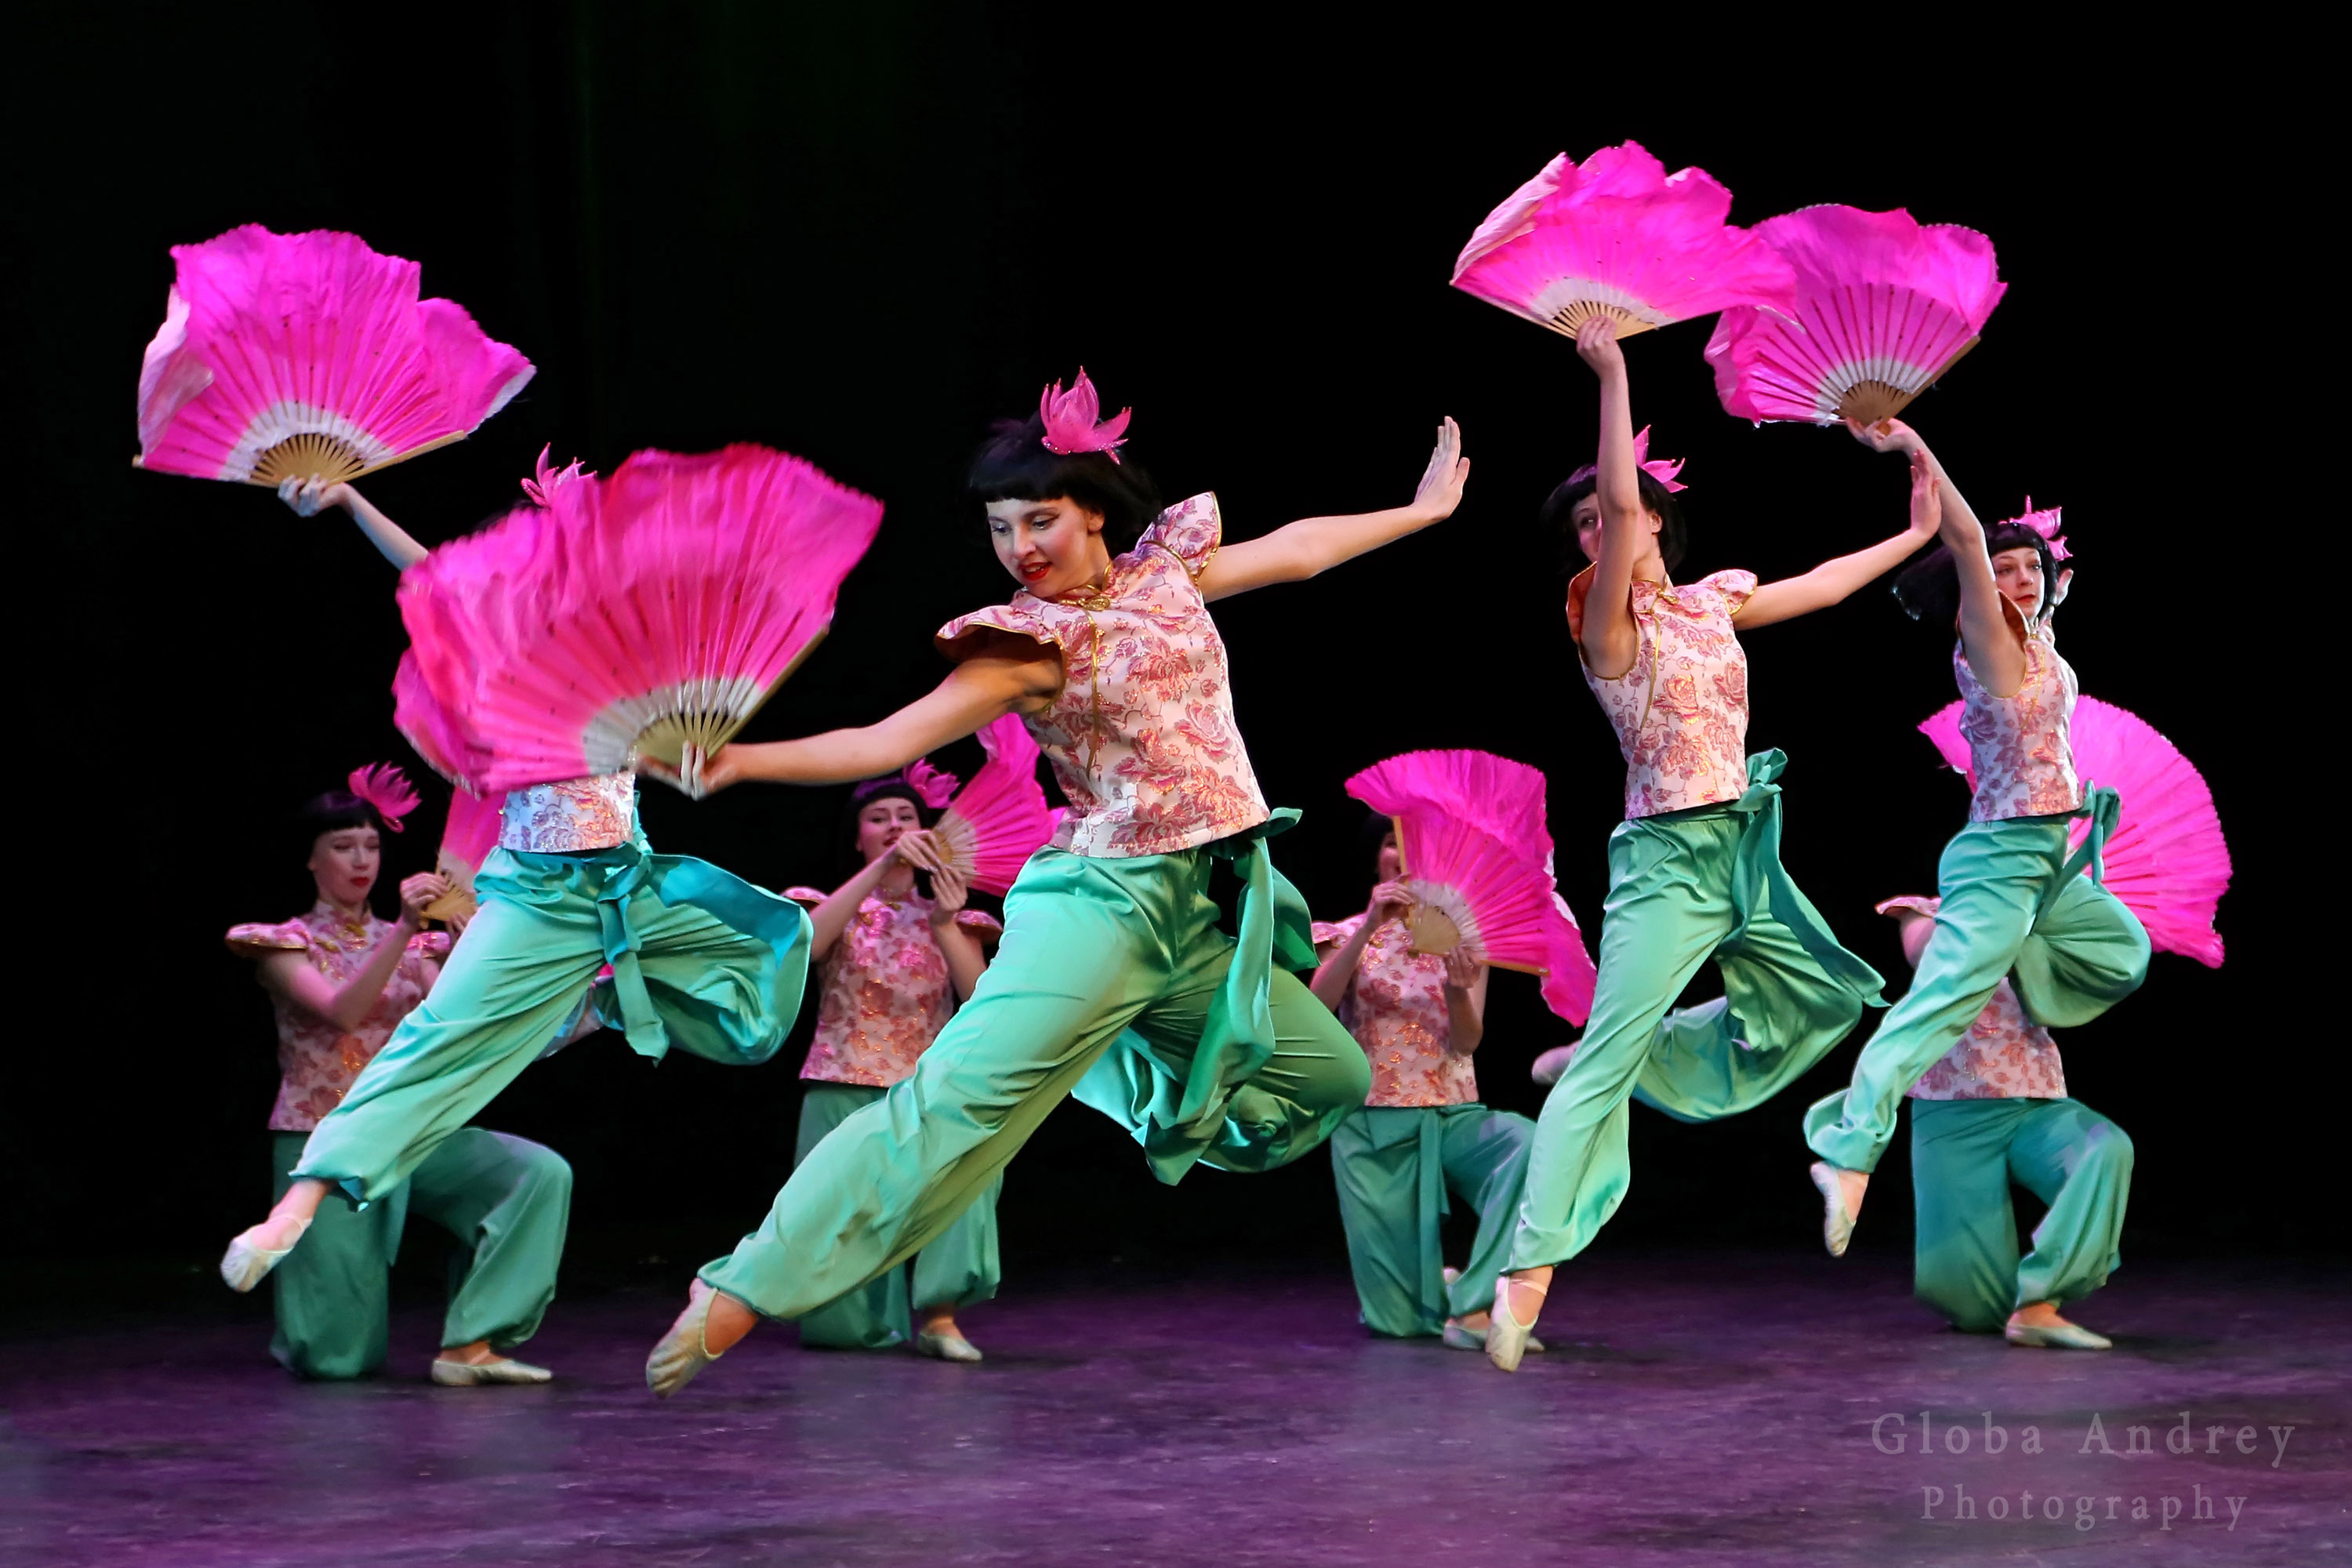 "Китайский танец", ансамбль Ритмы детства". "Chinese Dance", Rhythms of Childhood Ensemble.